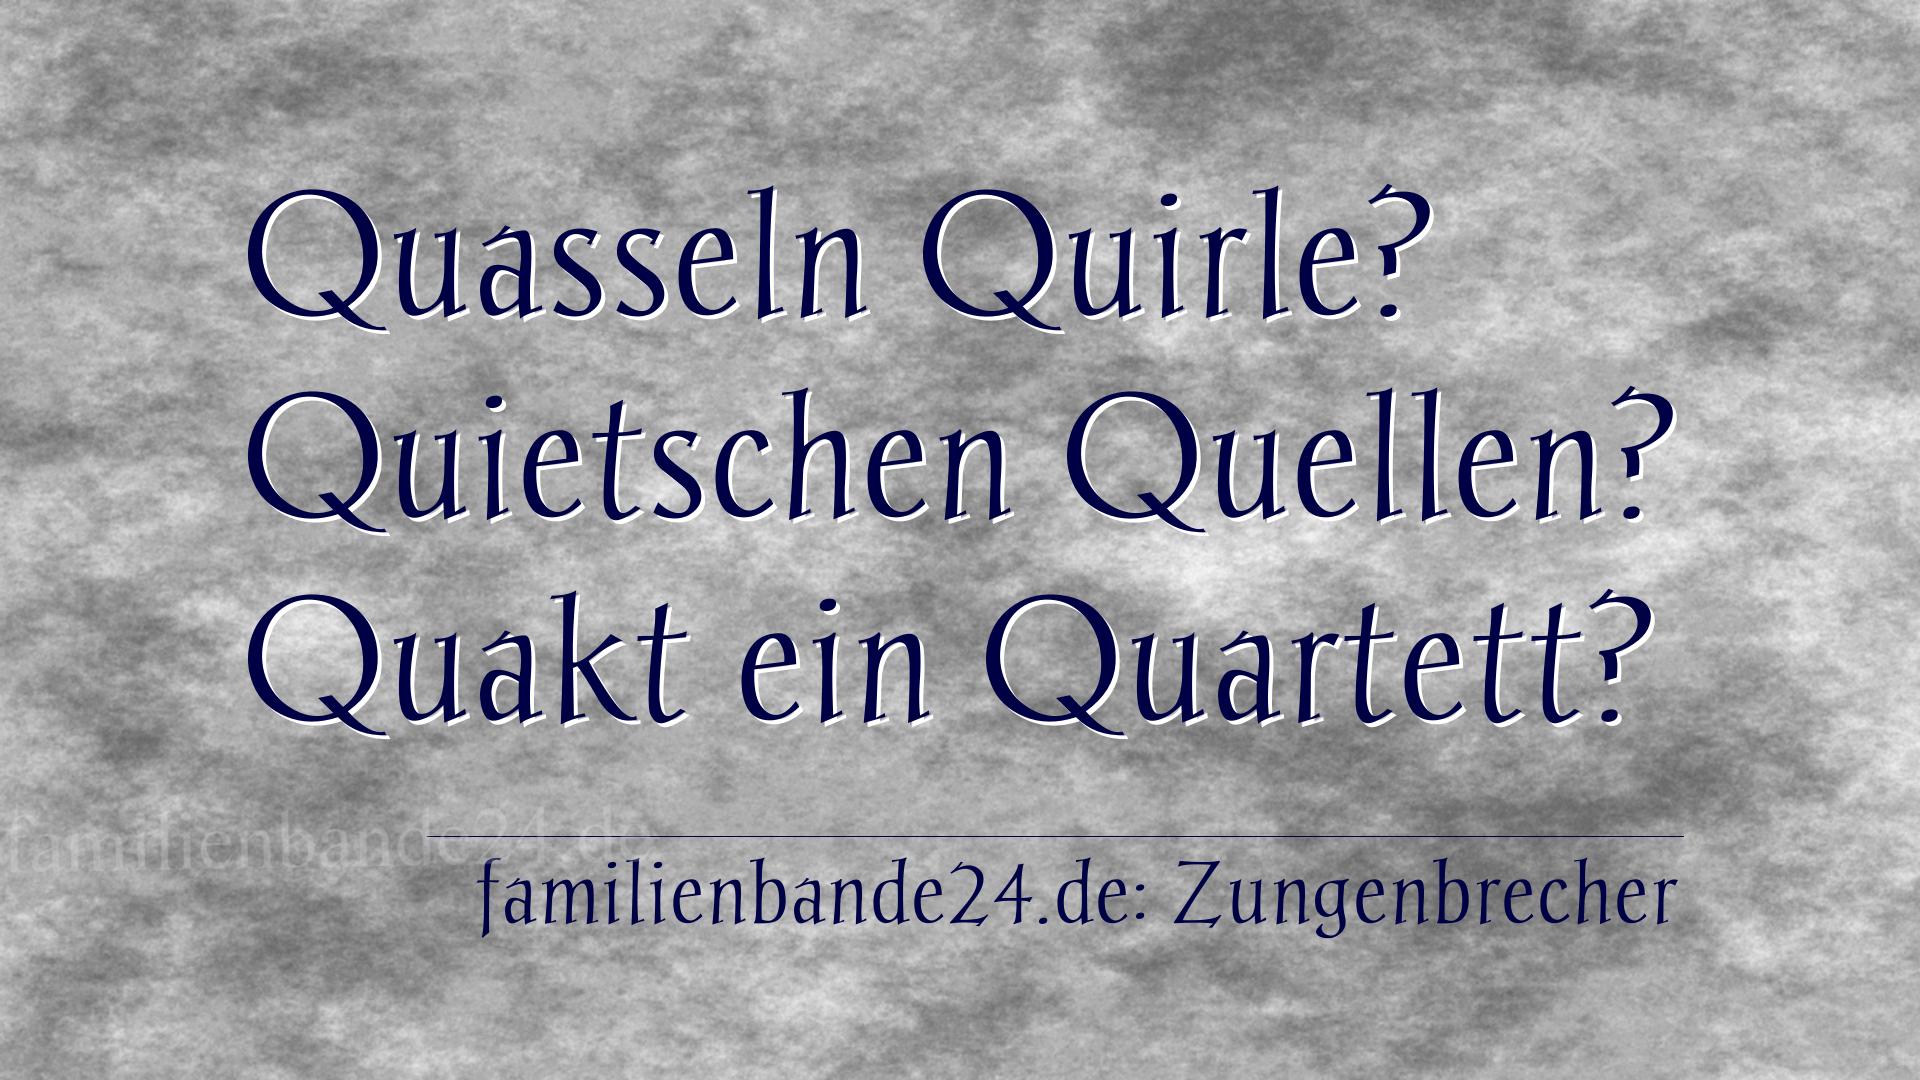 Zungenbrecher Nr. 738: Quasseln Quirle? Quietschen Quellen? Quakt ein Quartett?